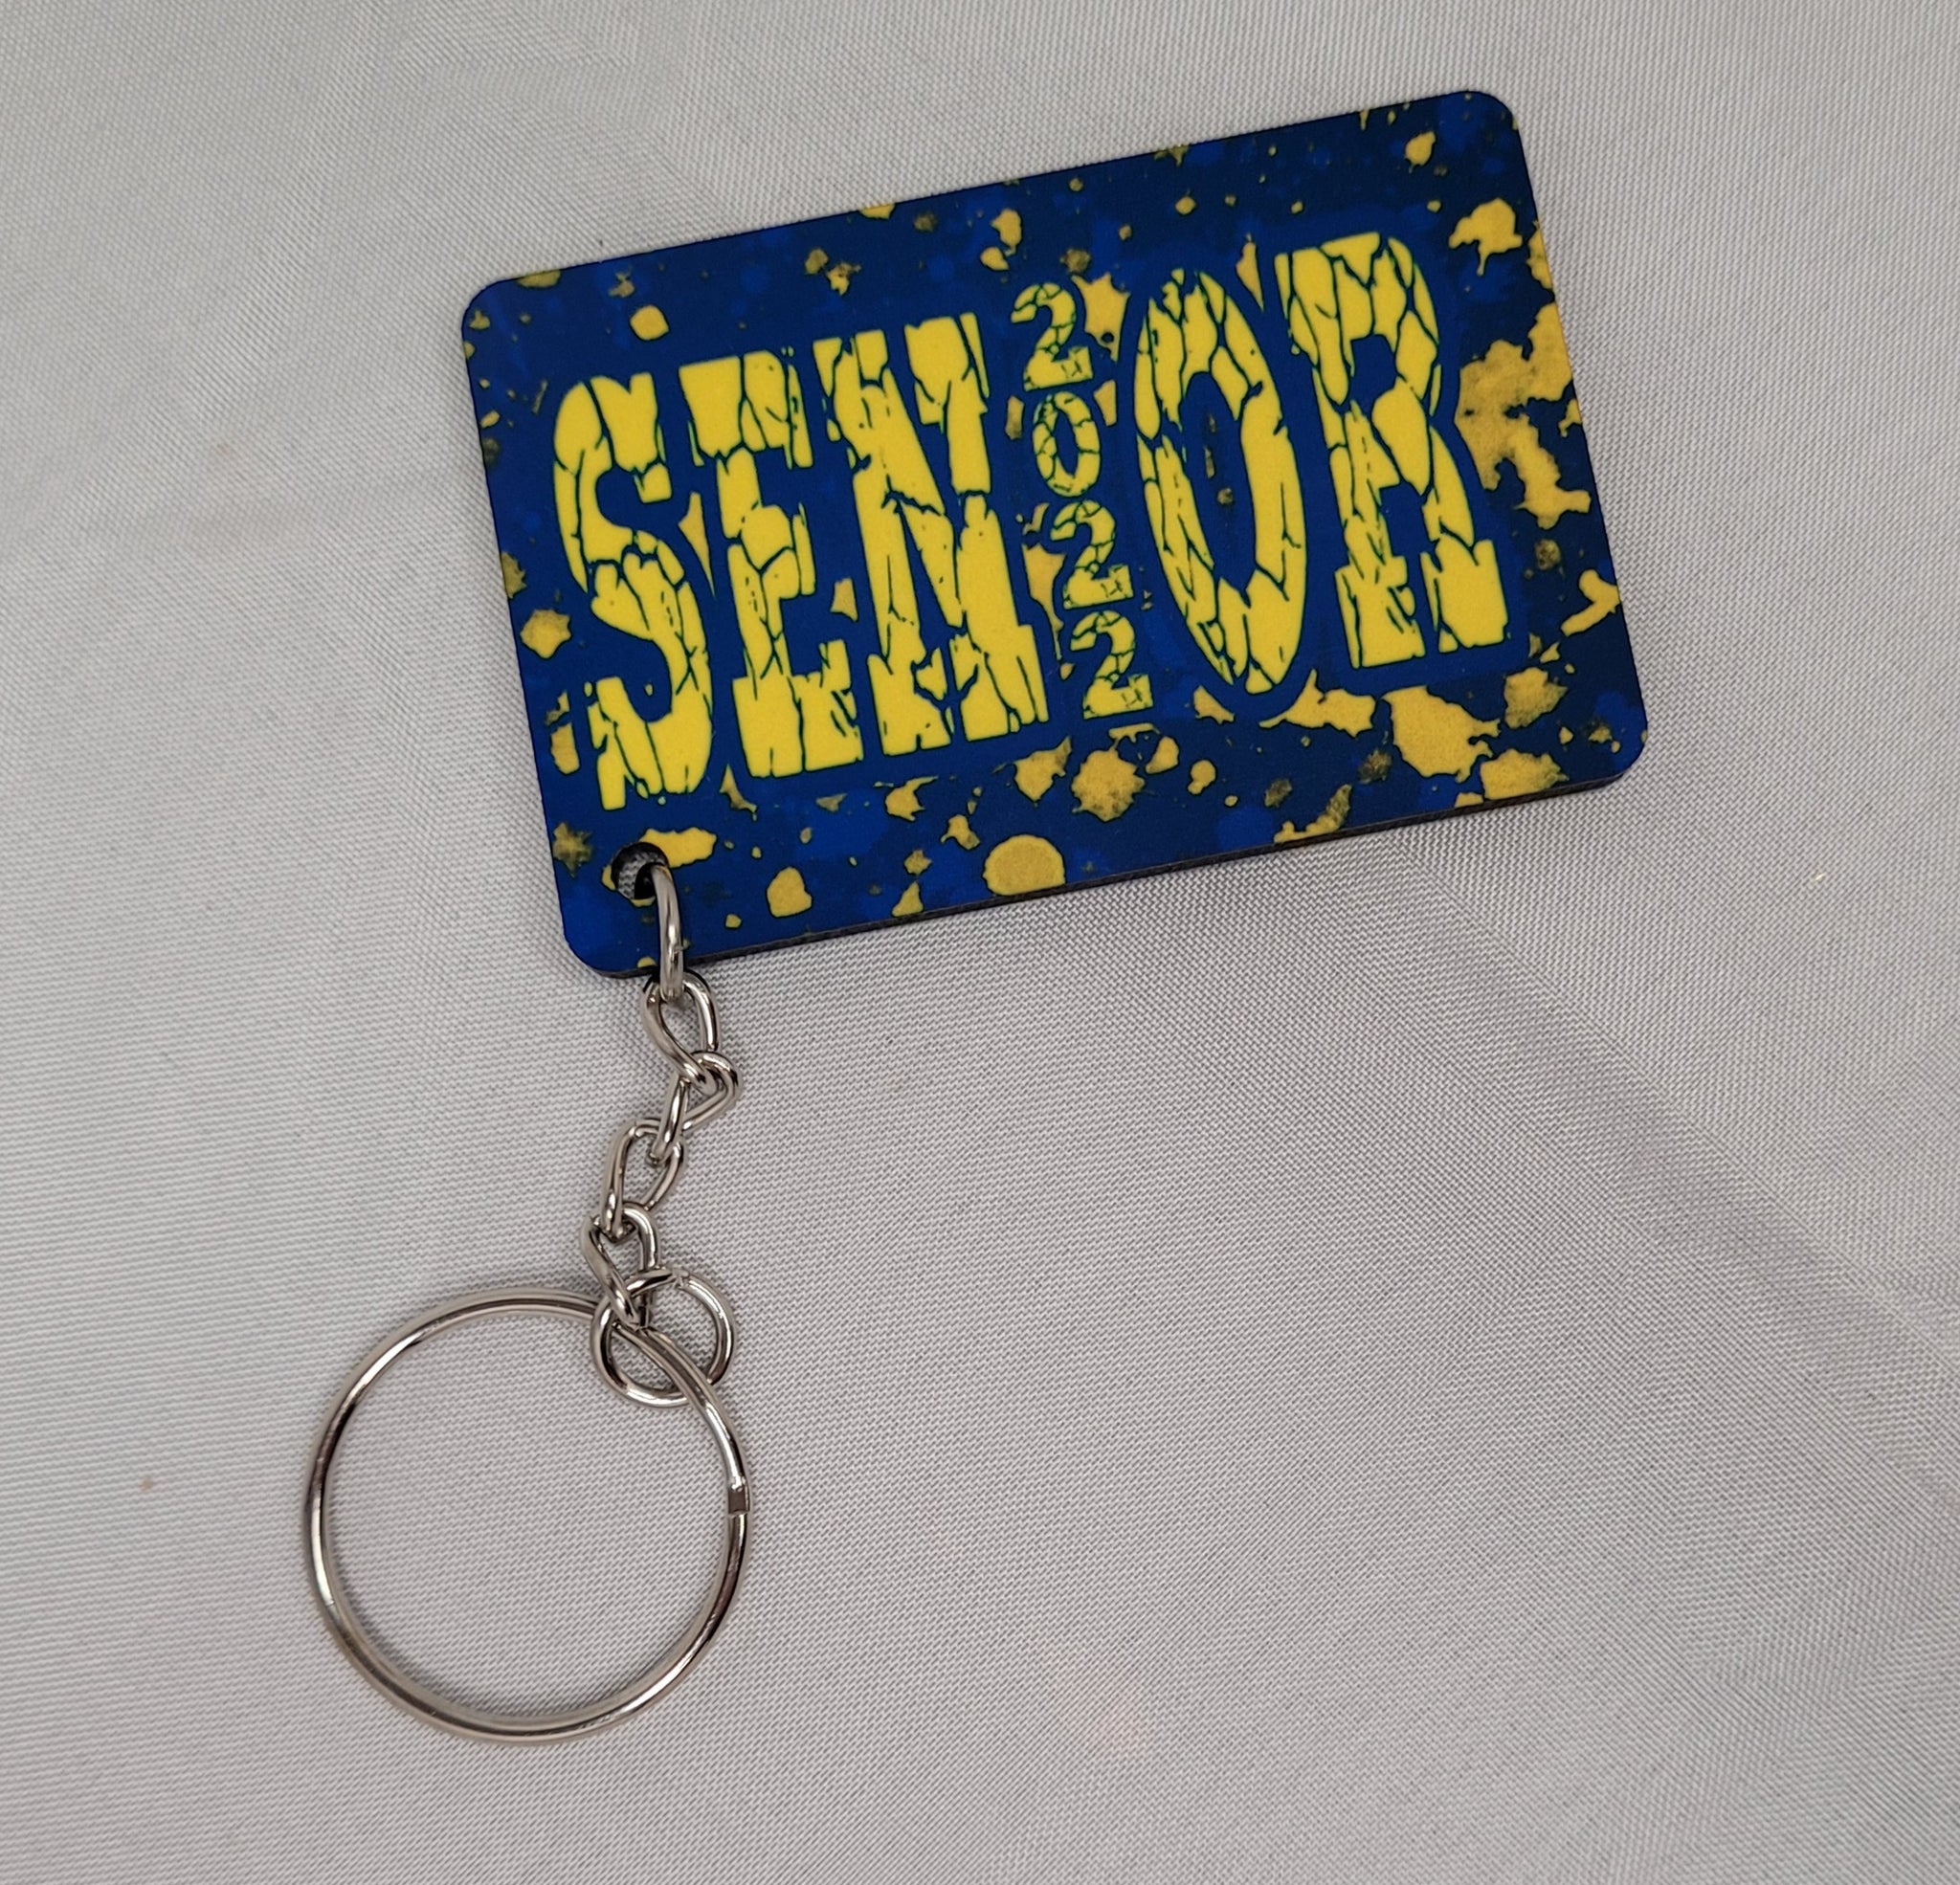 Senior 2022 Keychain